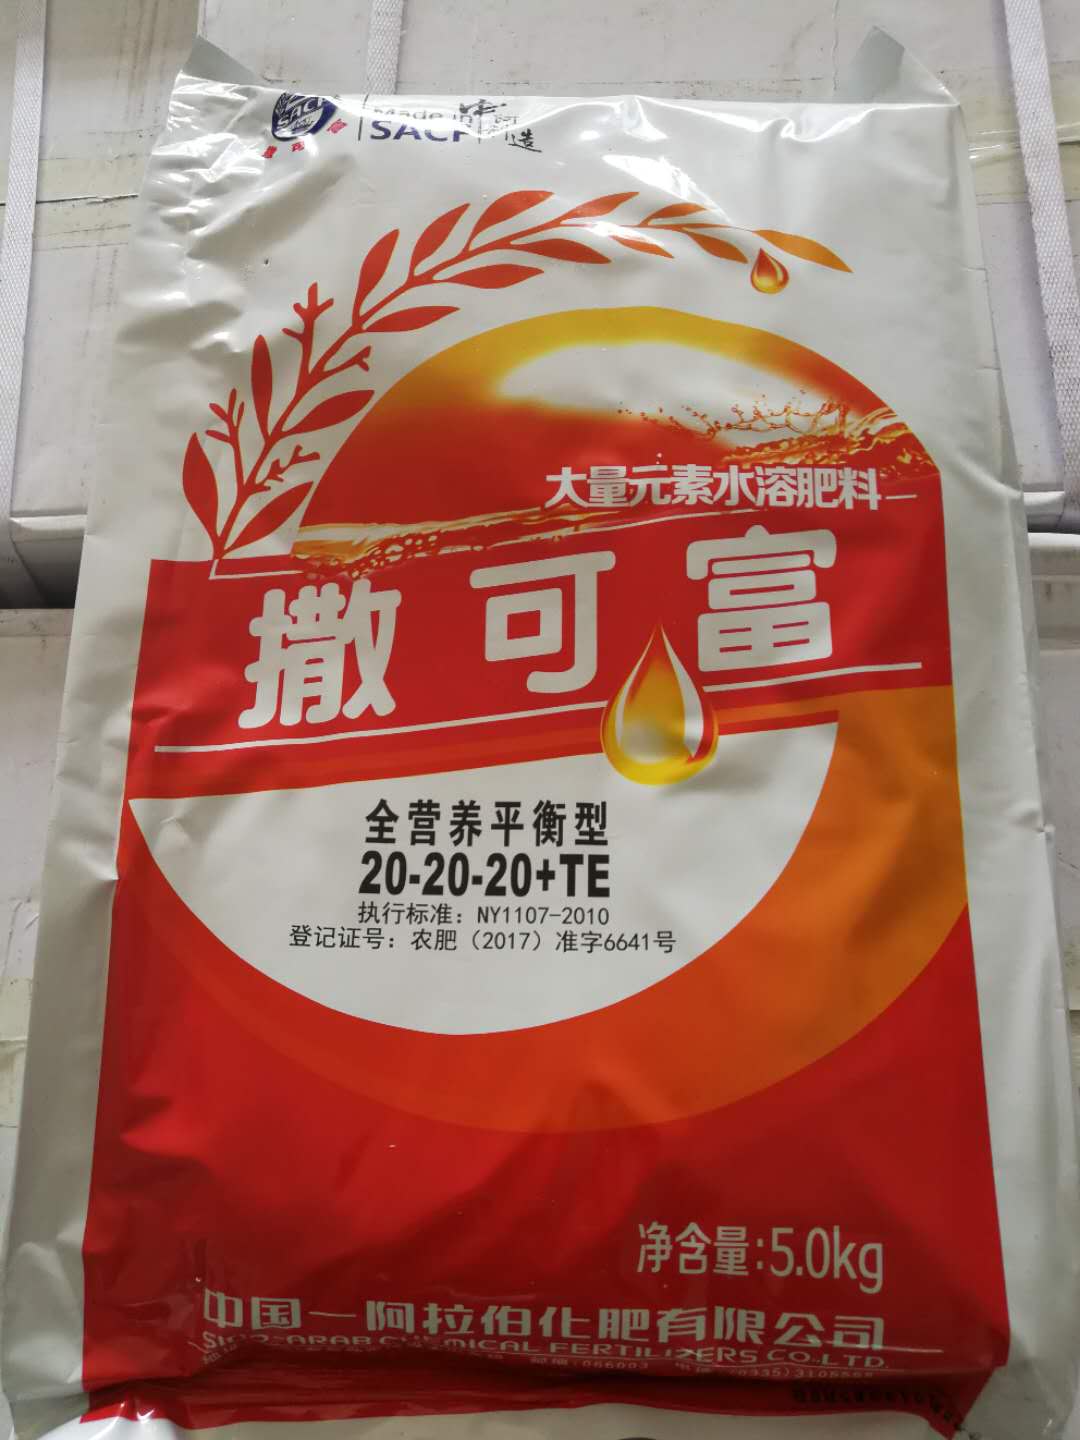 图说撒可富-中国-阿拉伯化肥有限公司